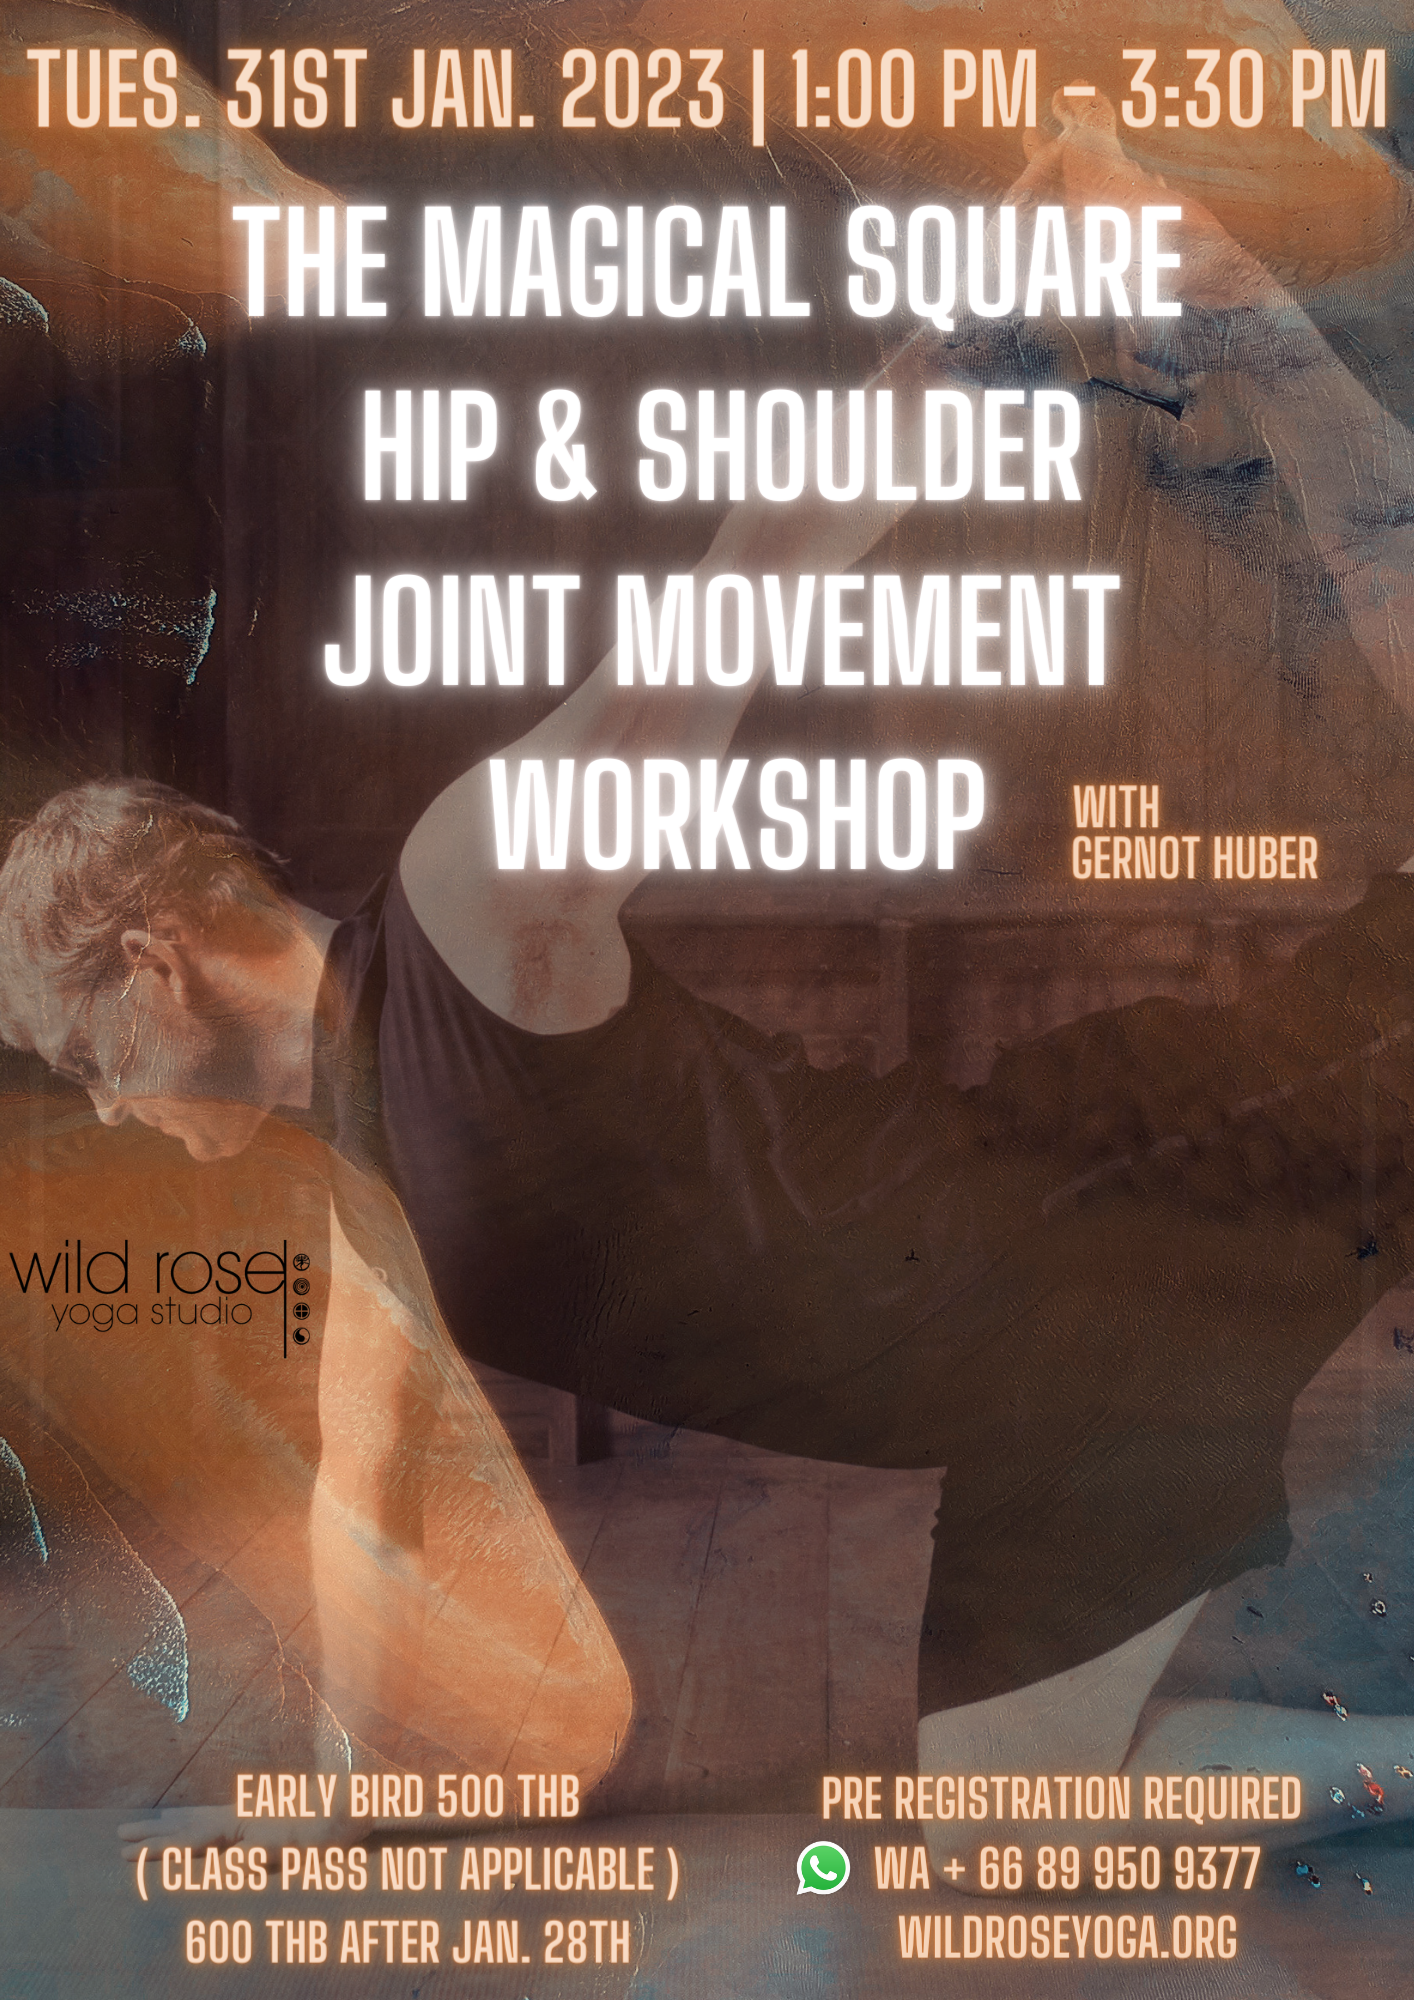 Special Yoga Workshop on Jan 31 2023